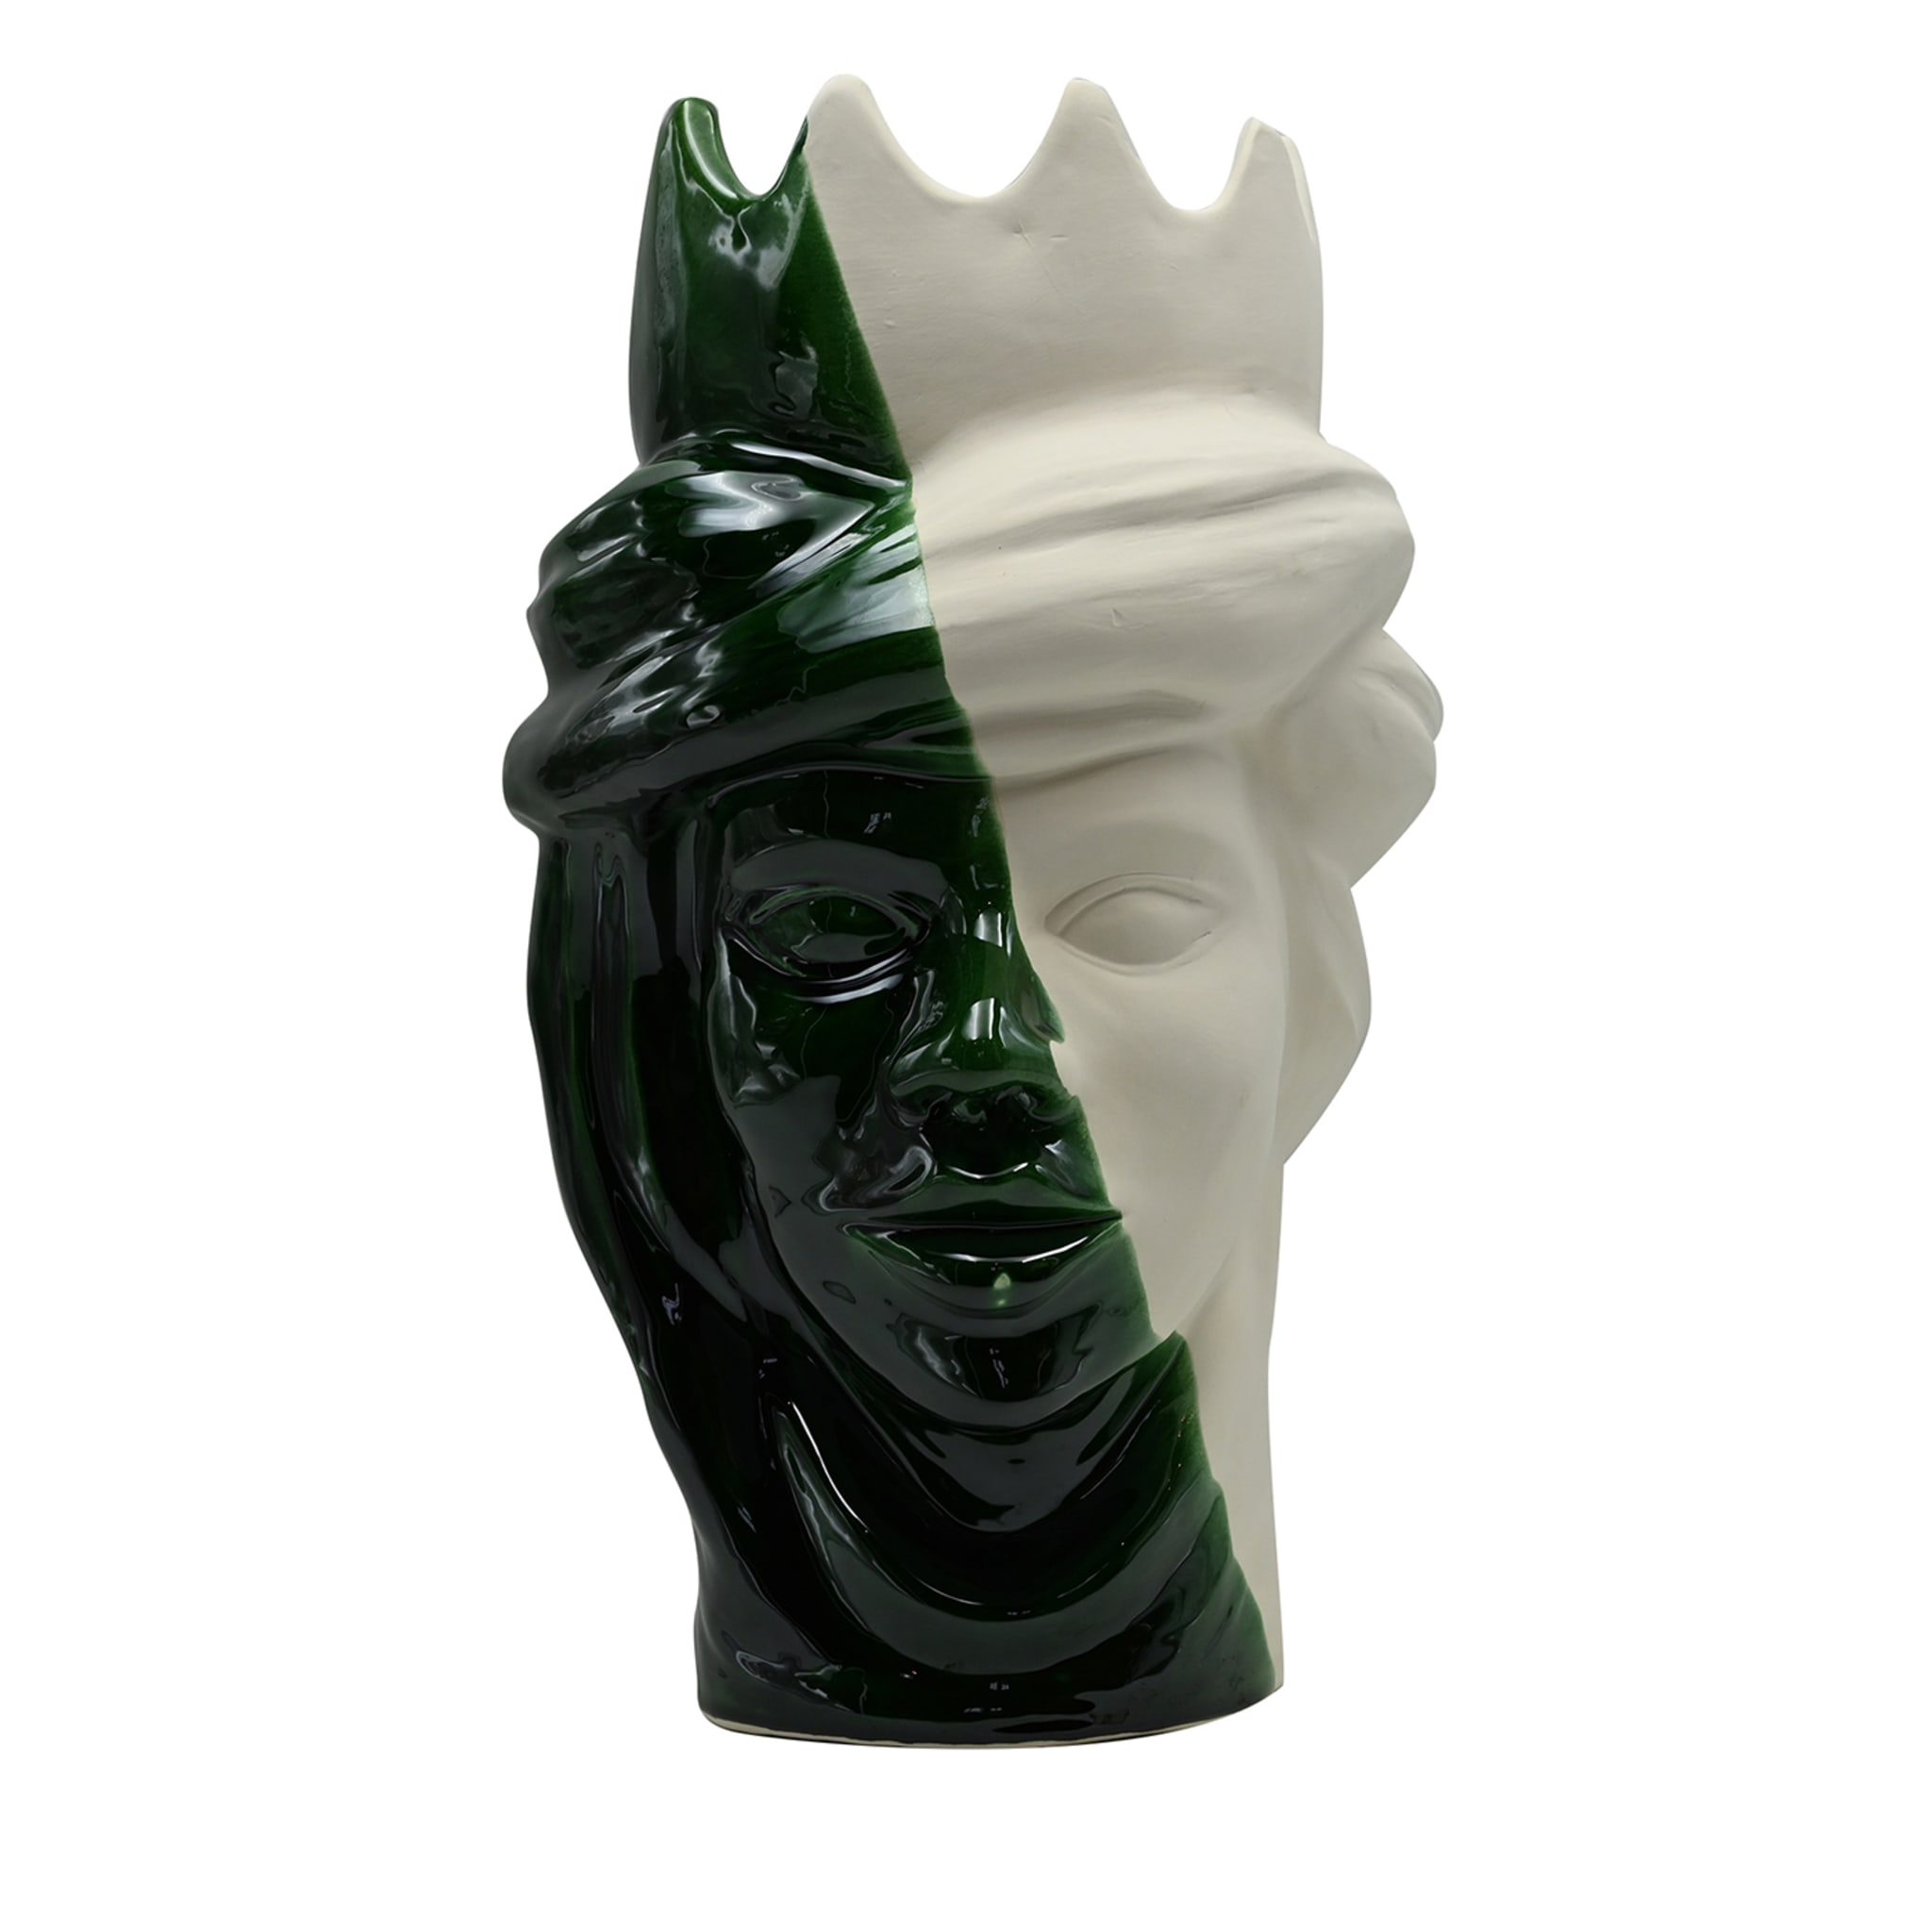 Green & White Moor's Head Sculpture